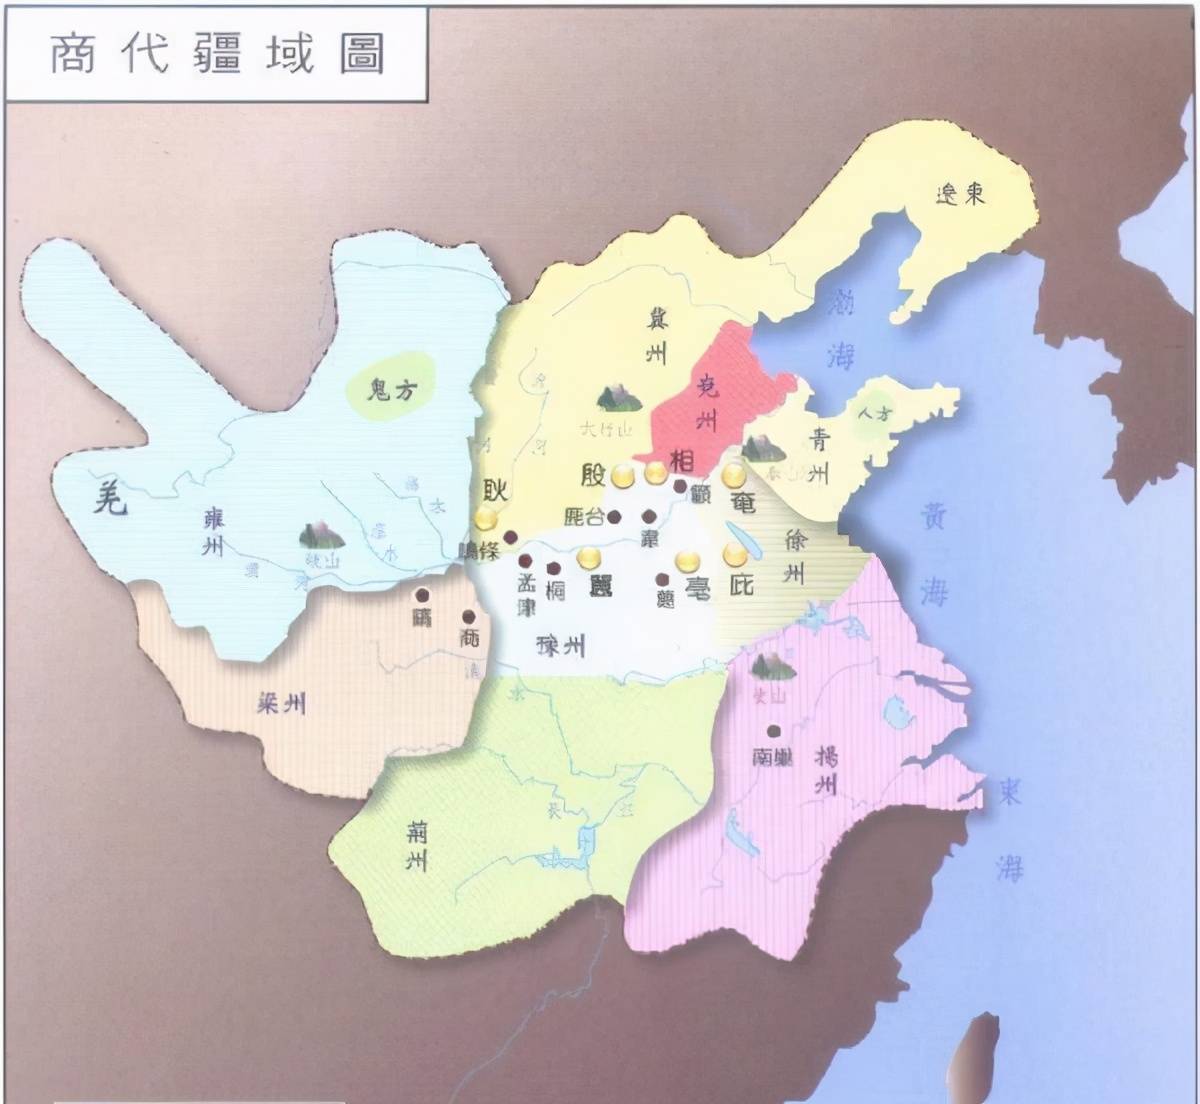 用来管理和监视中原诸侯,洛邑在当时也被称为中国,是华夏的中心,也是